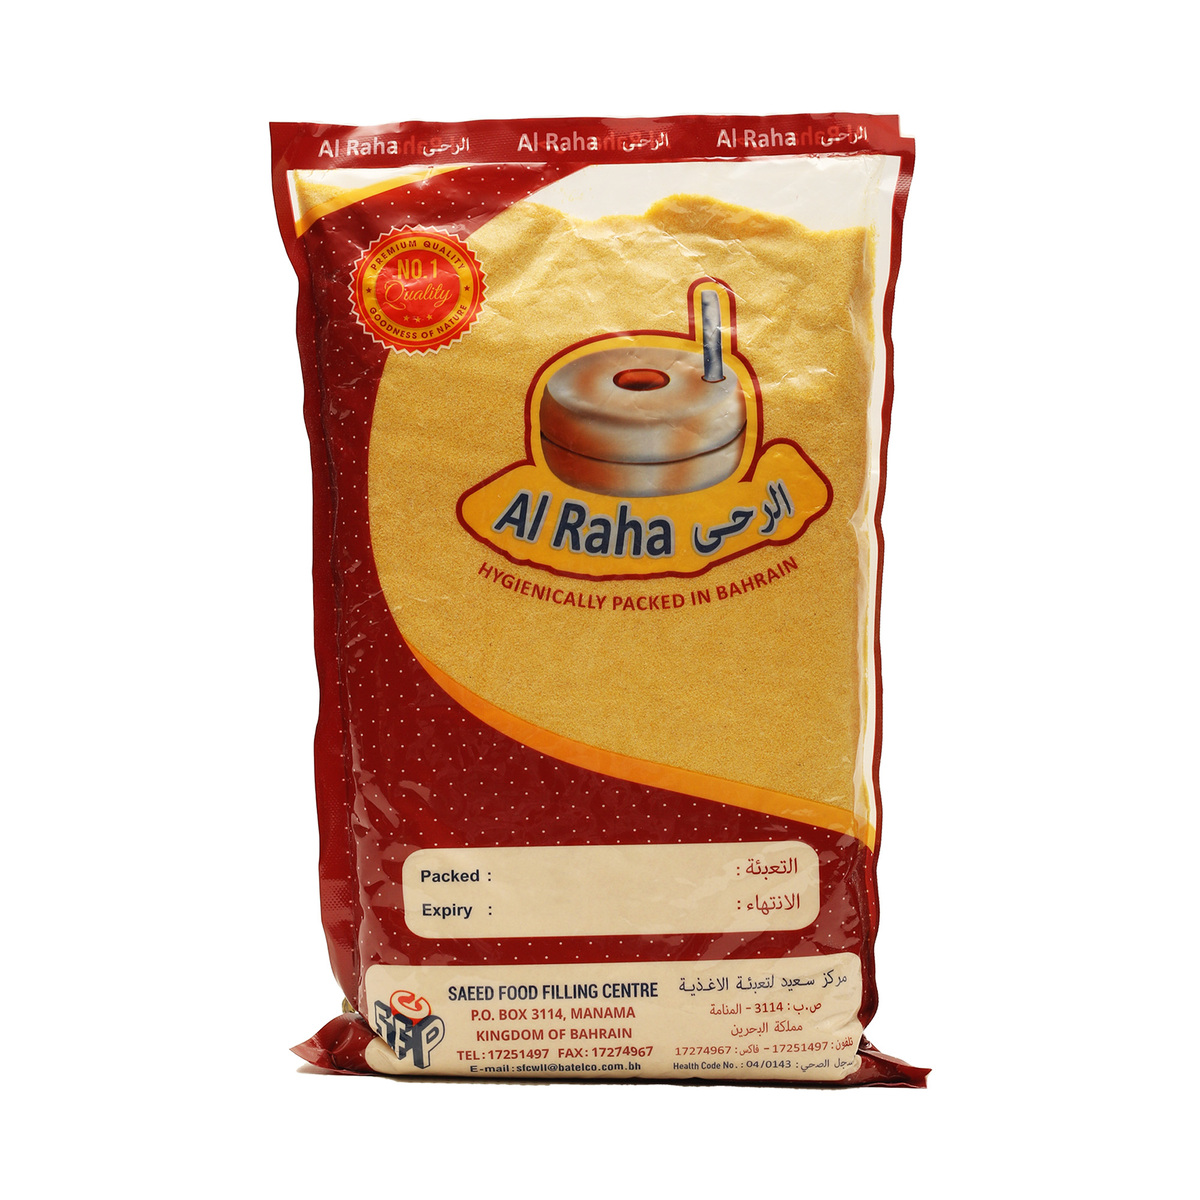 Al Raha Corn Flour Yellow 1kg